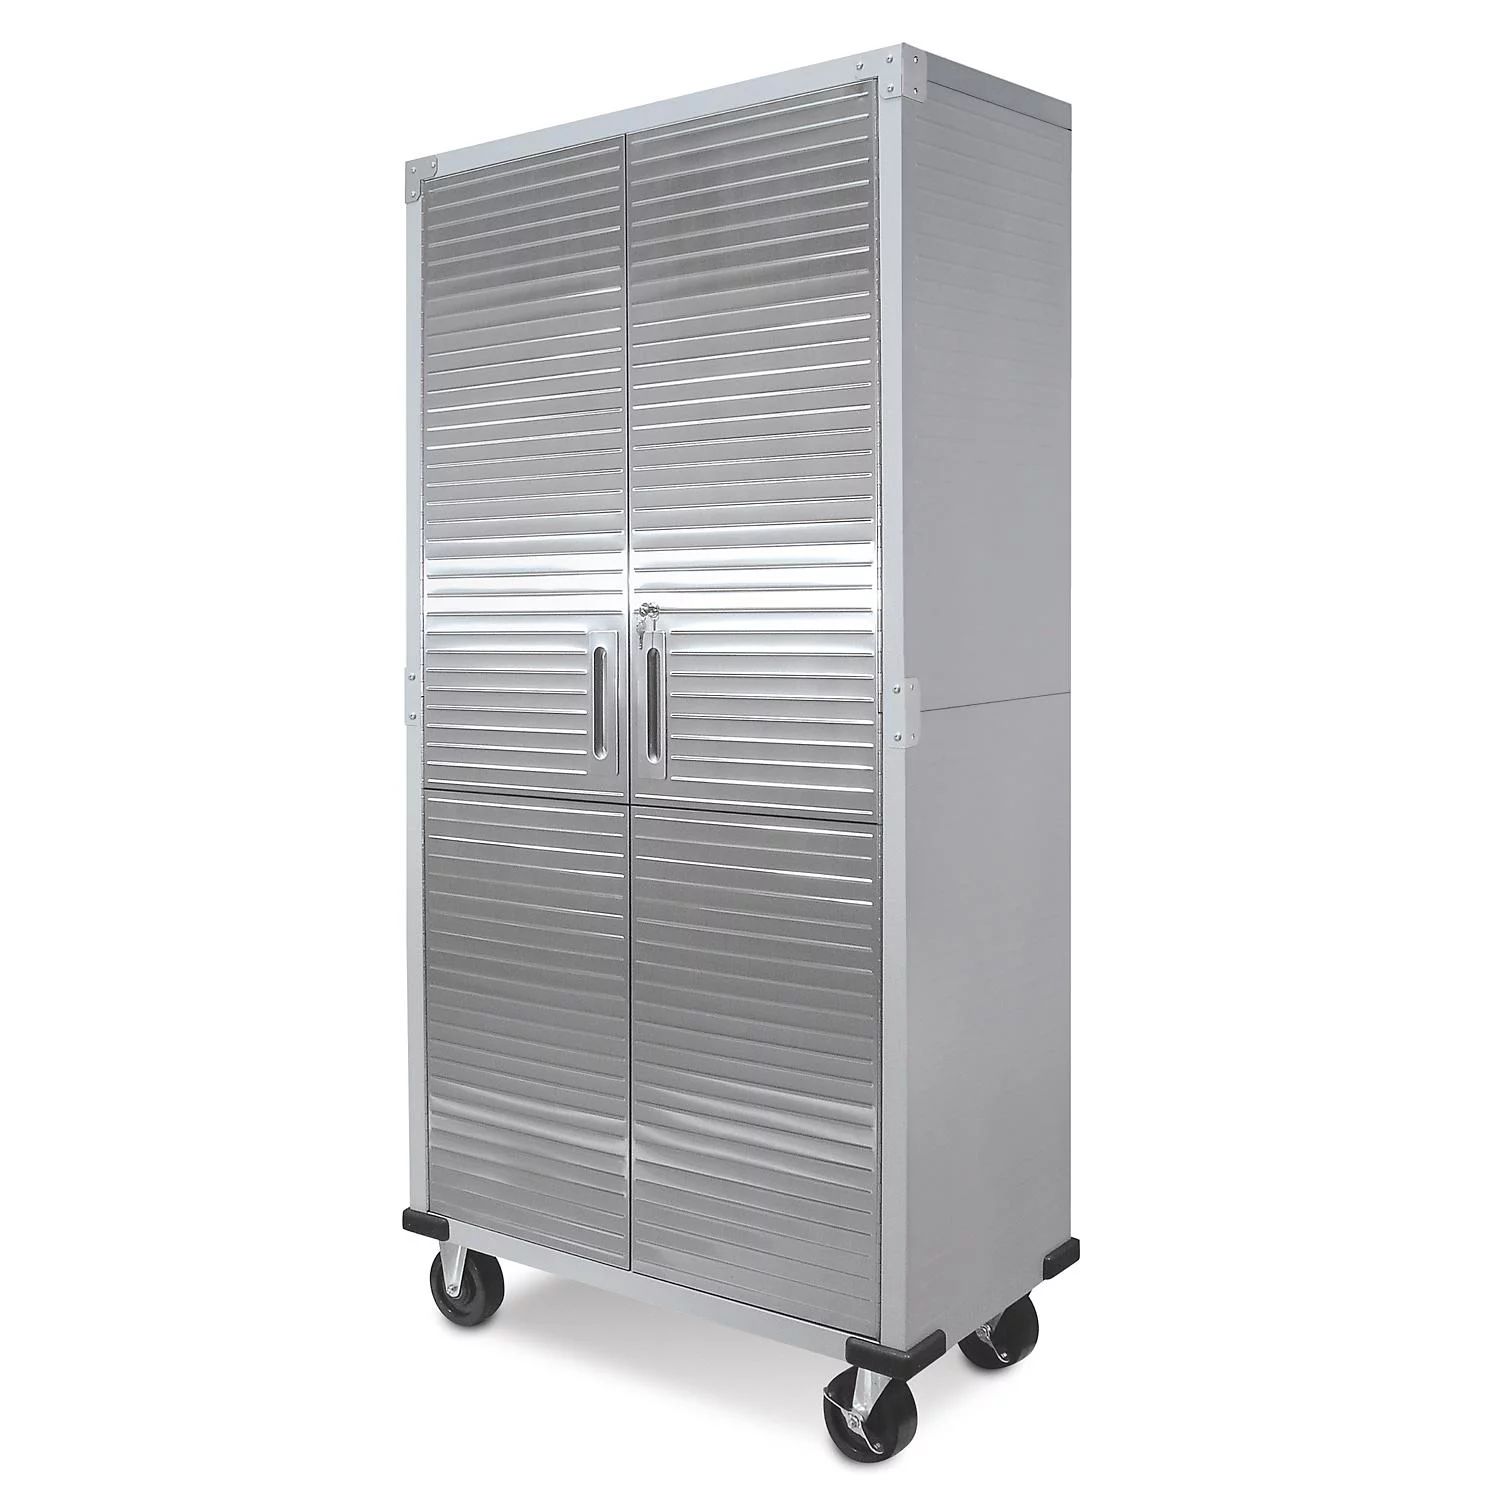 UltraHD Steel Heavy-Duty Storage Cabinet by Seville Classics | Walmart (US)